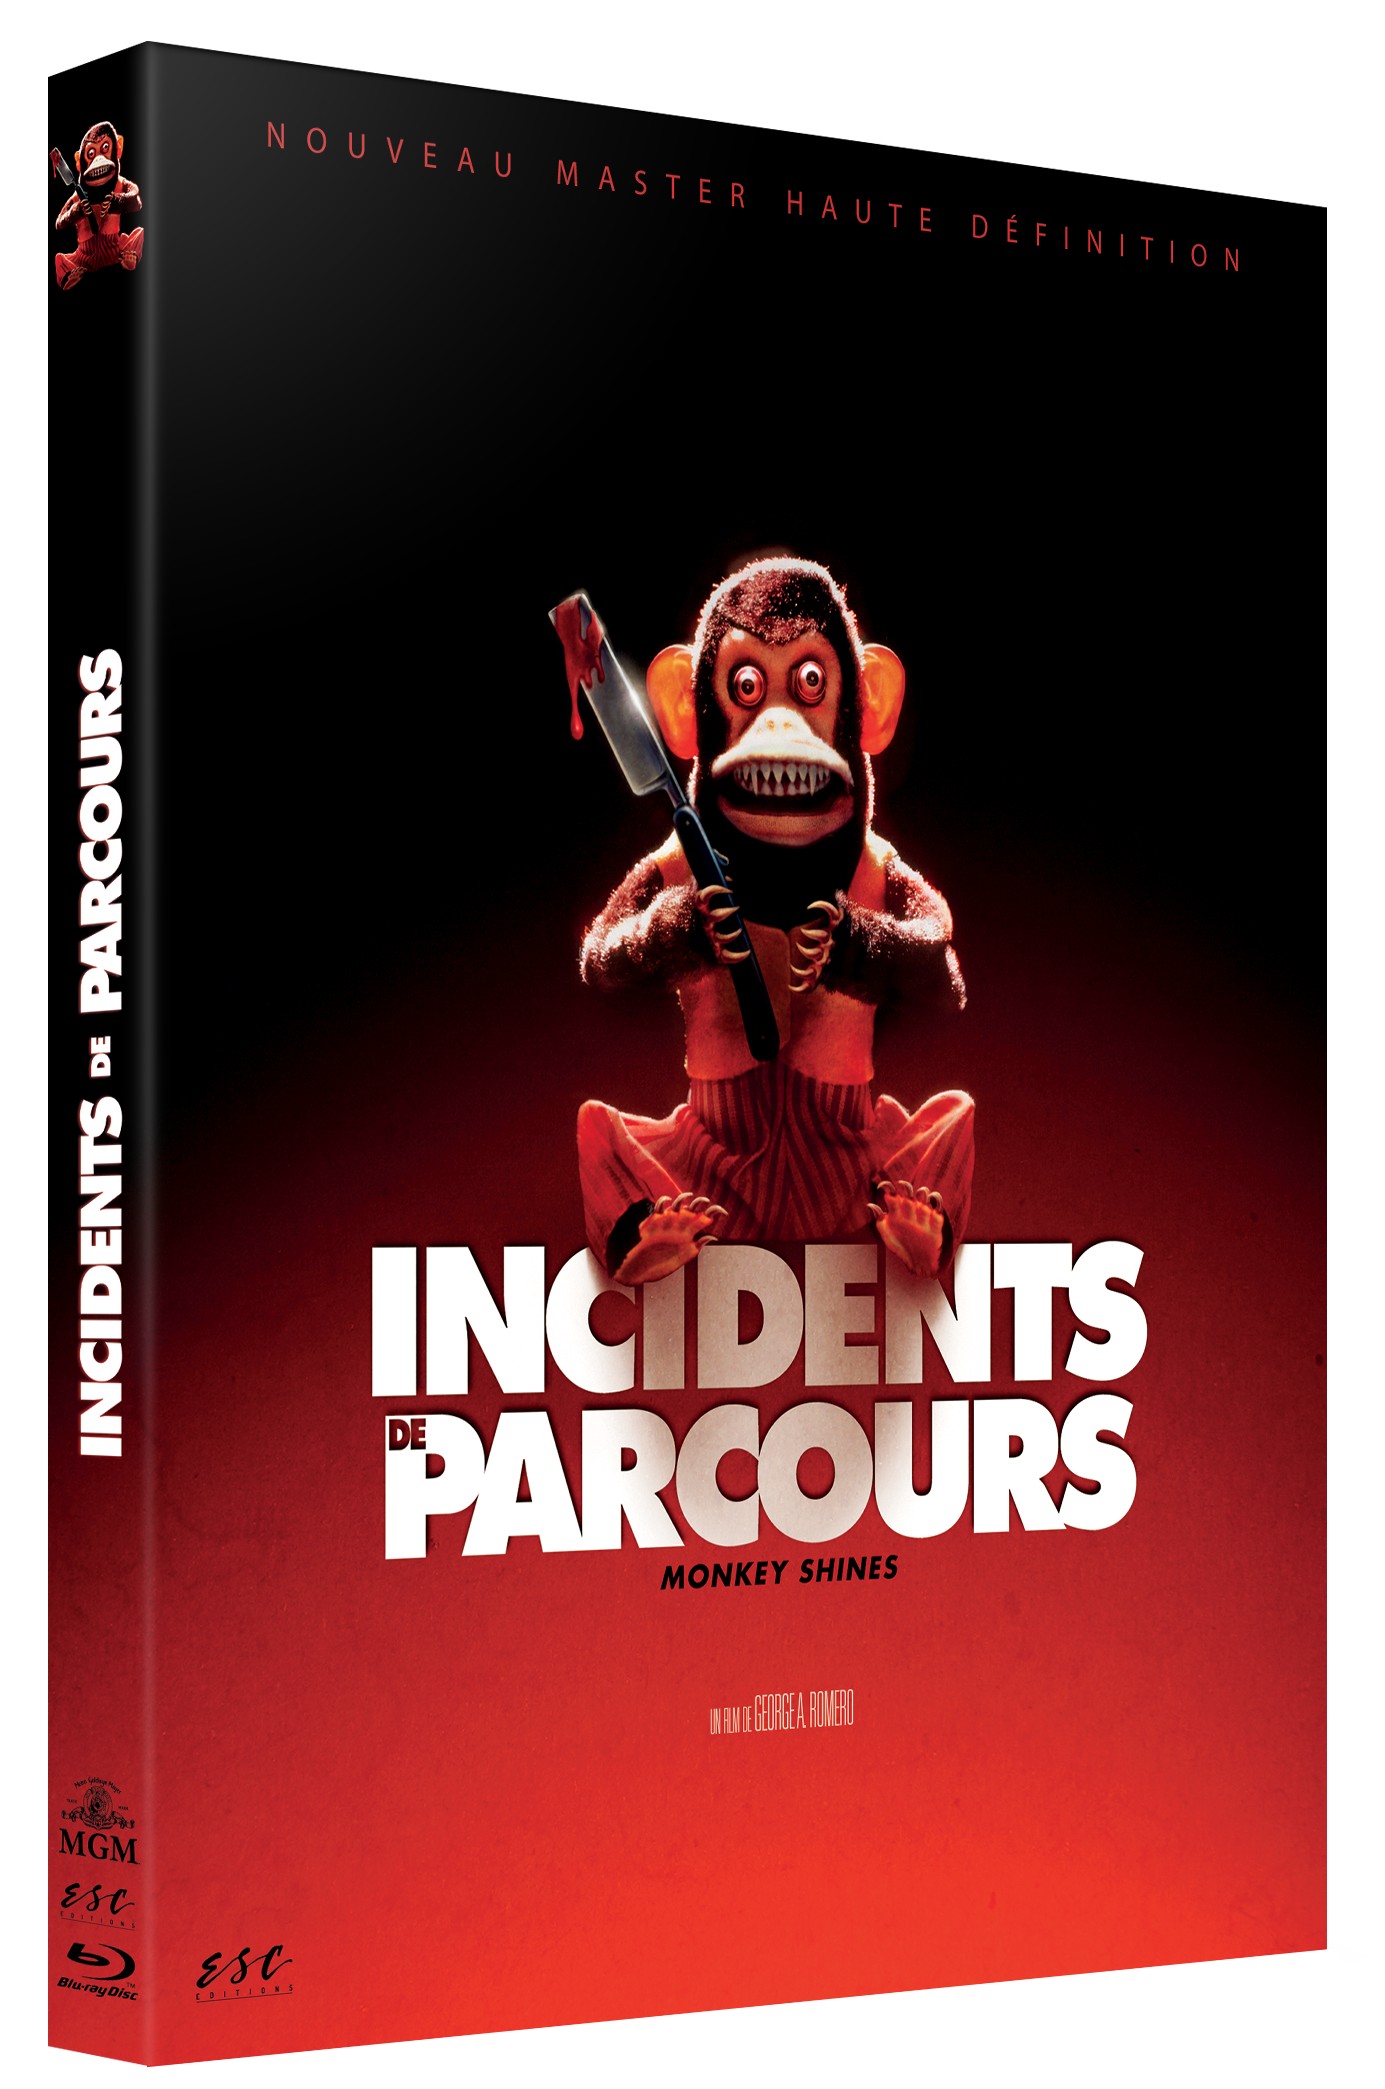 INCIDENTS DE PARCOURS - MONKEY SHINES - BRD